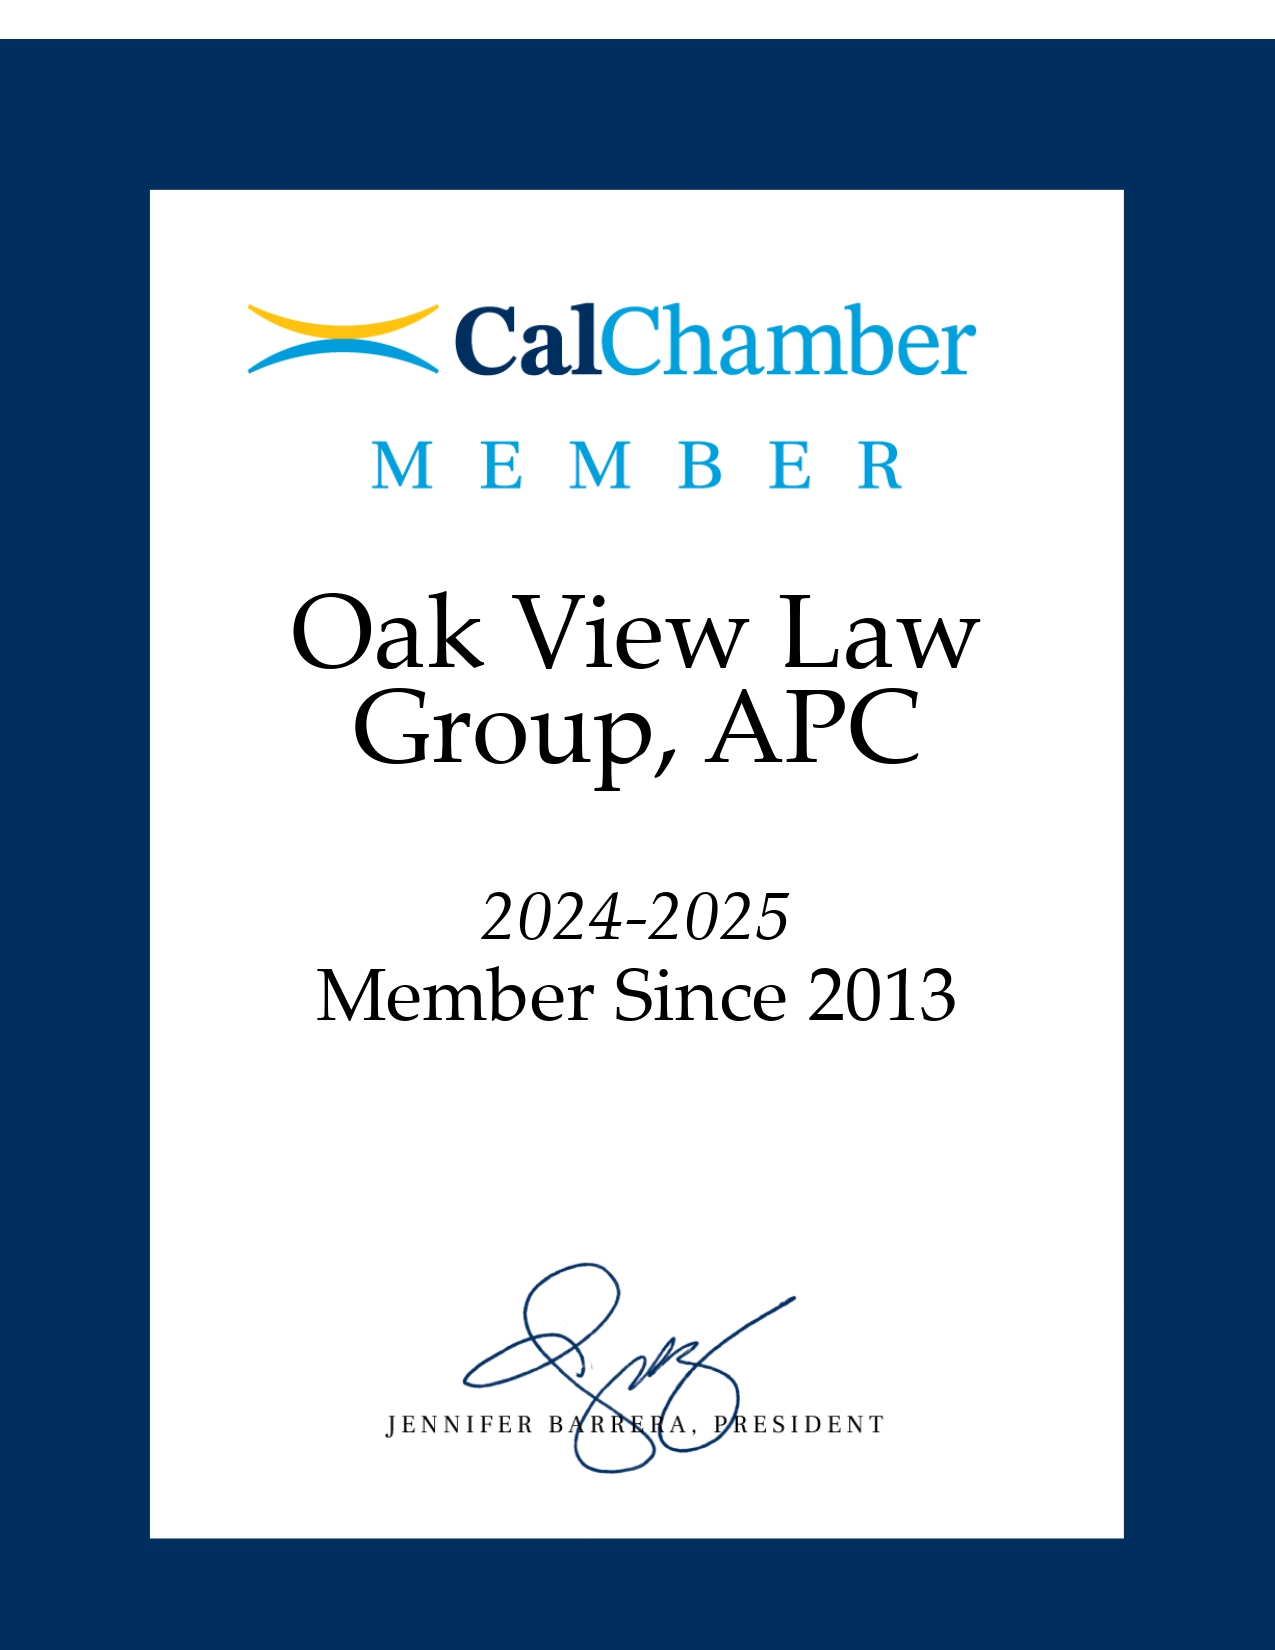 OVLG: Member of California Chamber of Commerce